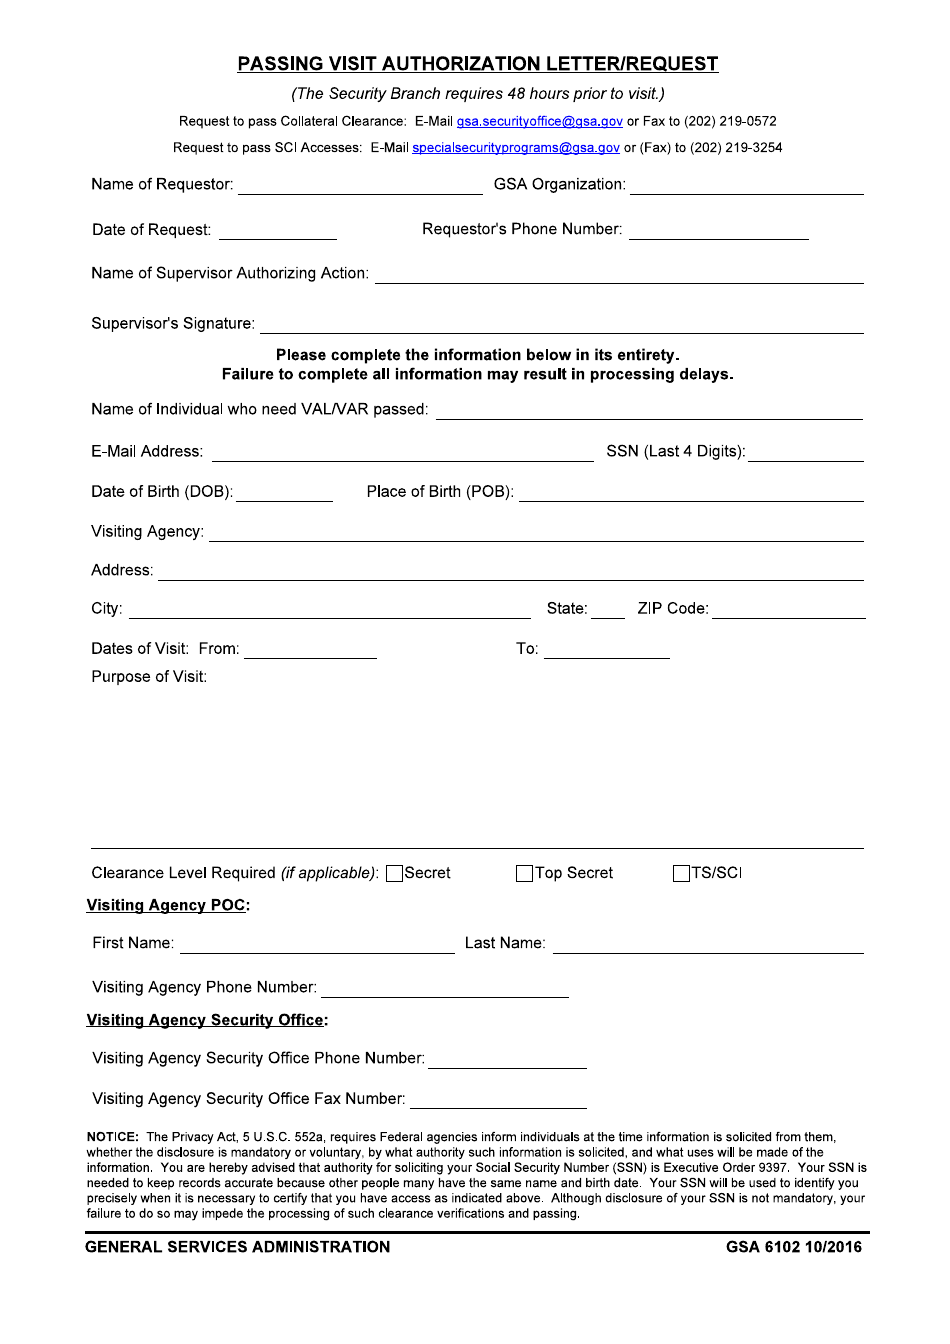 GSA Form 6102 Passing Visit Authorization Letter / Request, Page 1